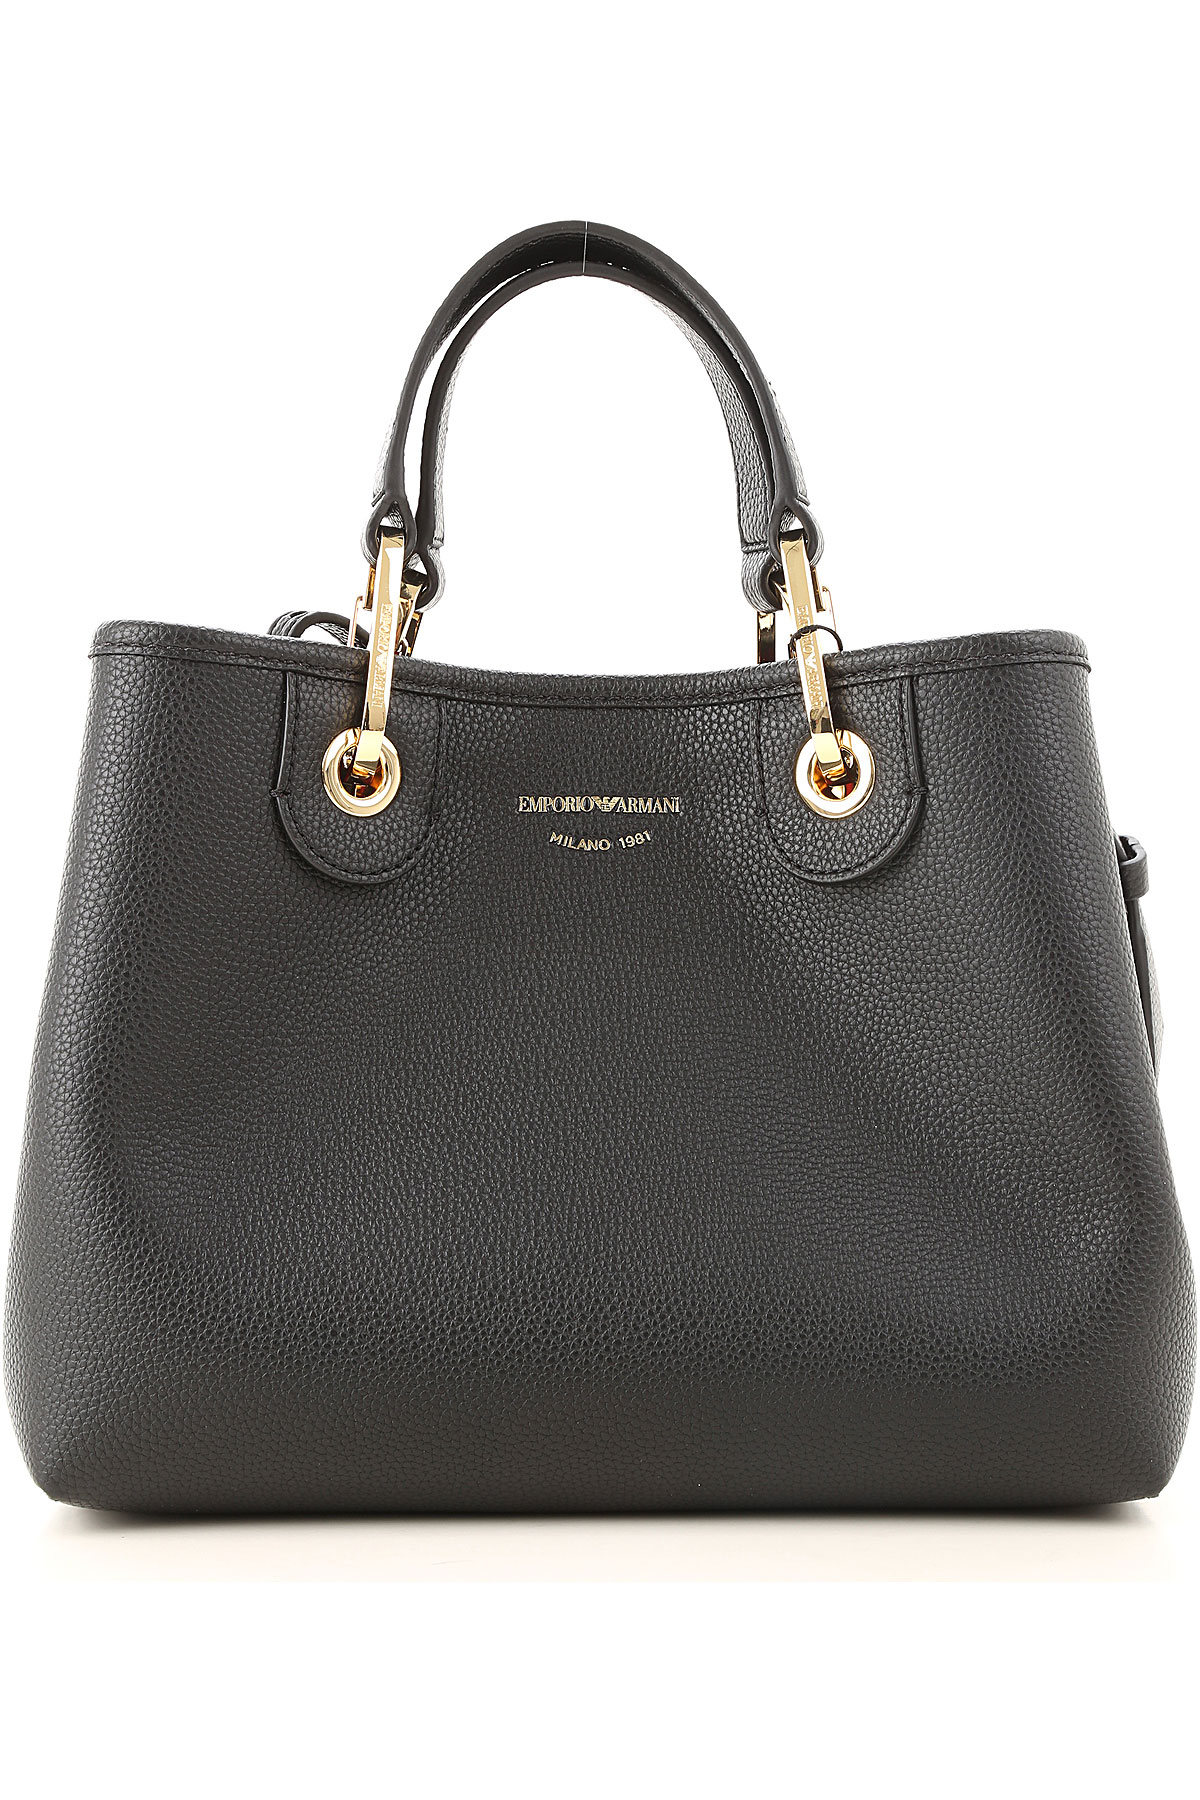 Handbags Emporio Armani, Style code: y3d166-yf05b-88058